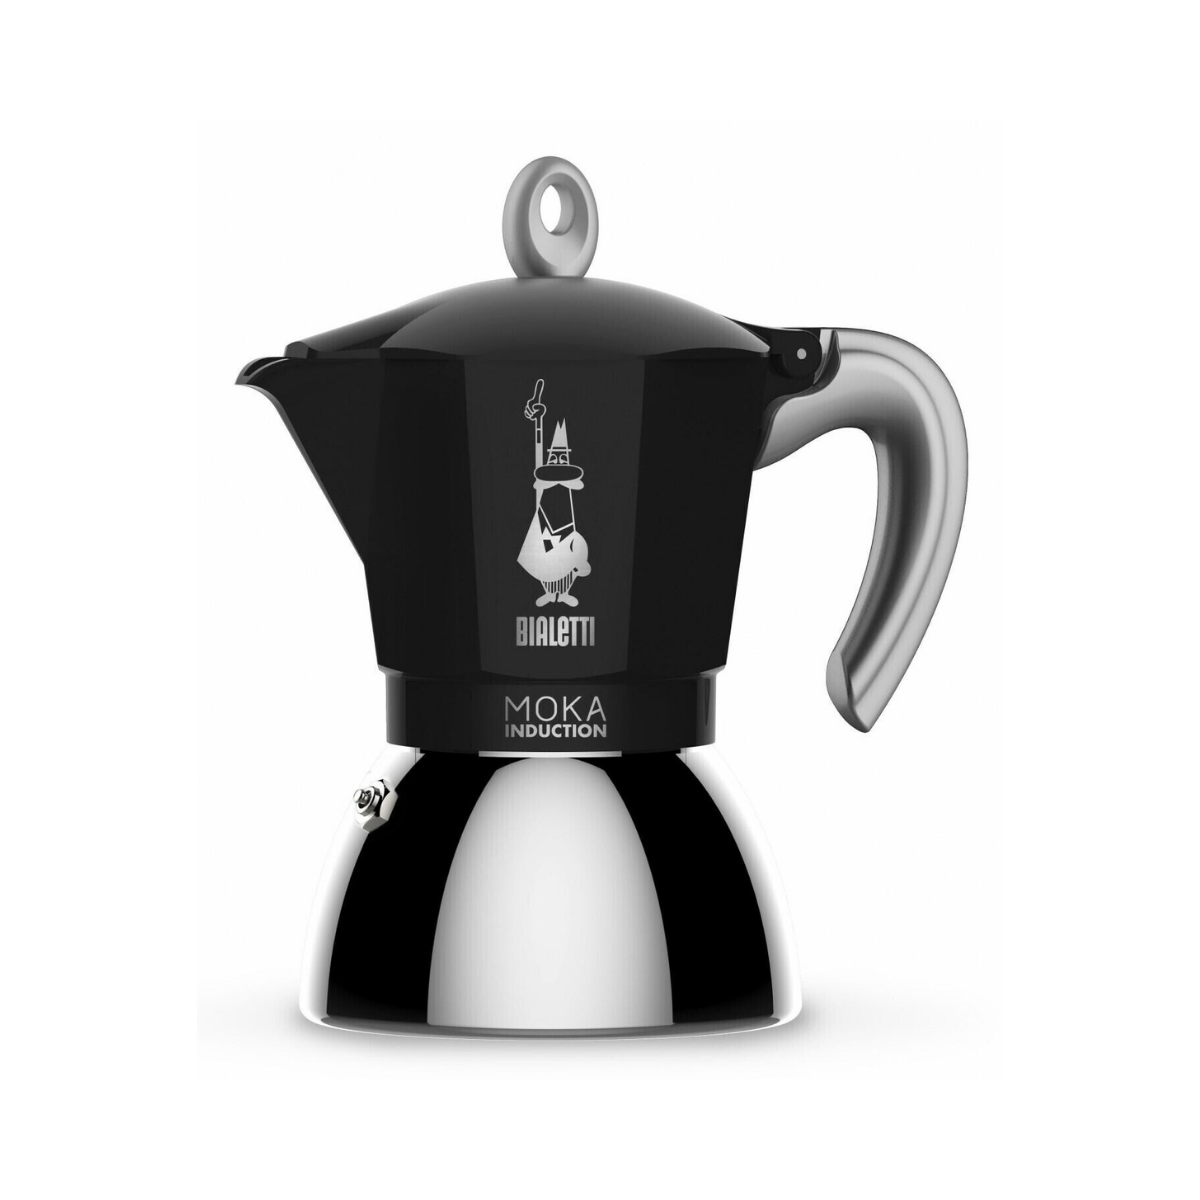 Cafetera Bialetti New Moka Inducción Negra 6 tazas (tamaño estándar) –  Viaggio Espresso